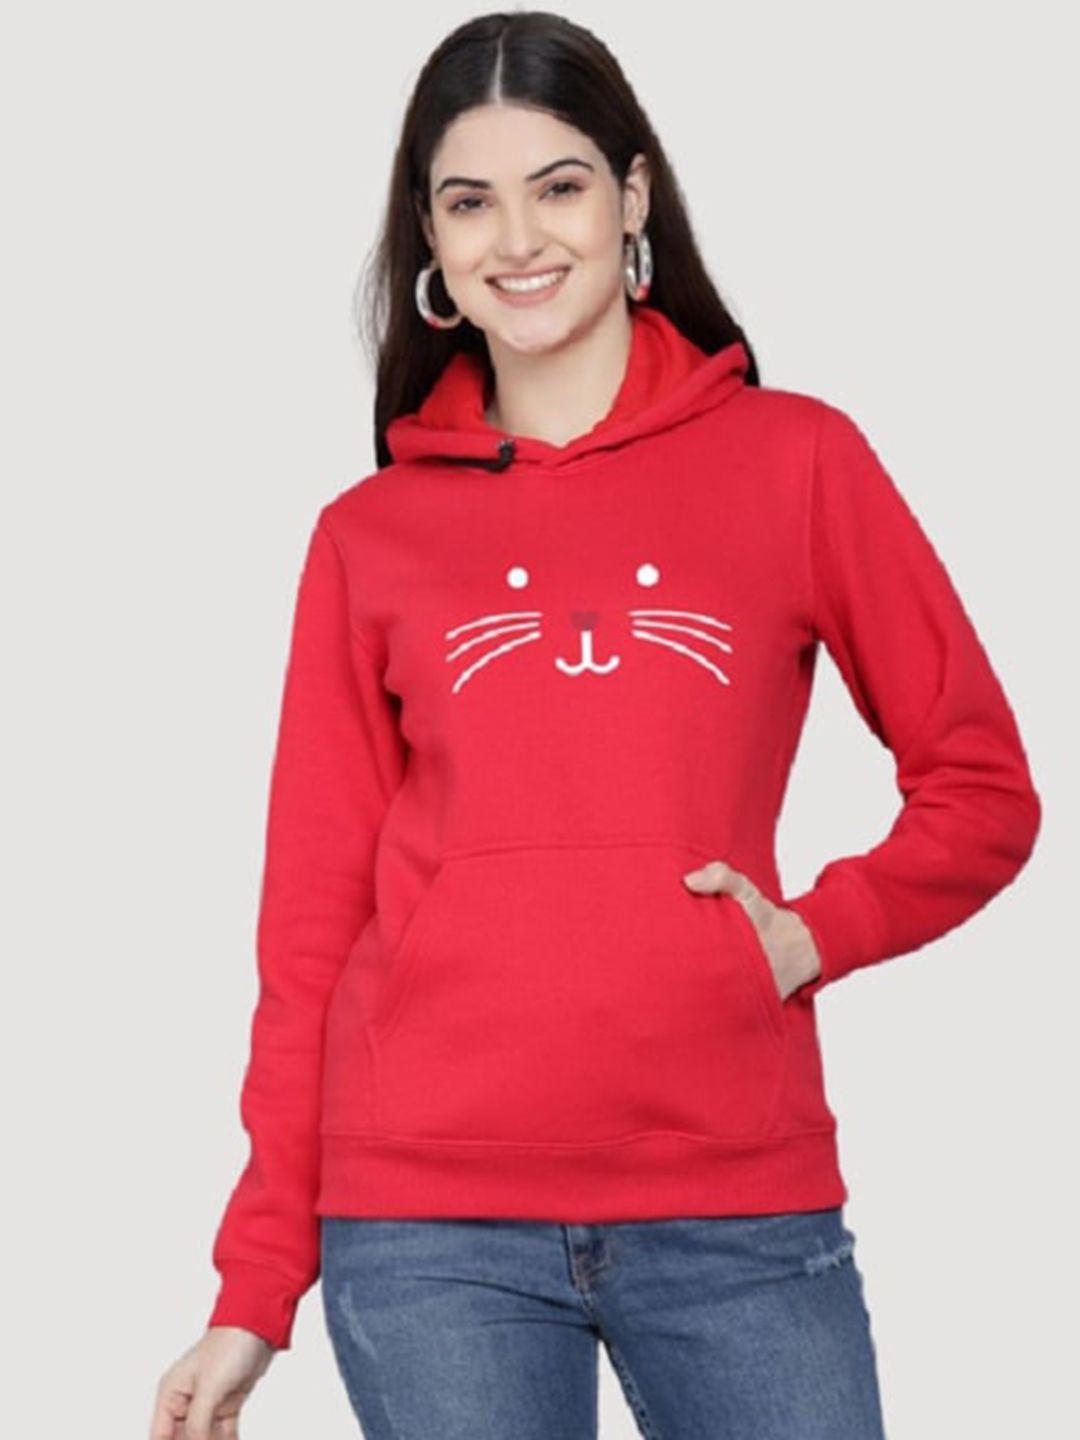 pockman women red printed hooded sweatshirt